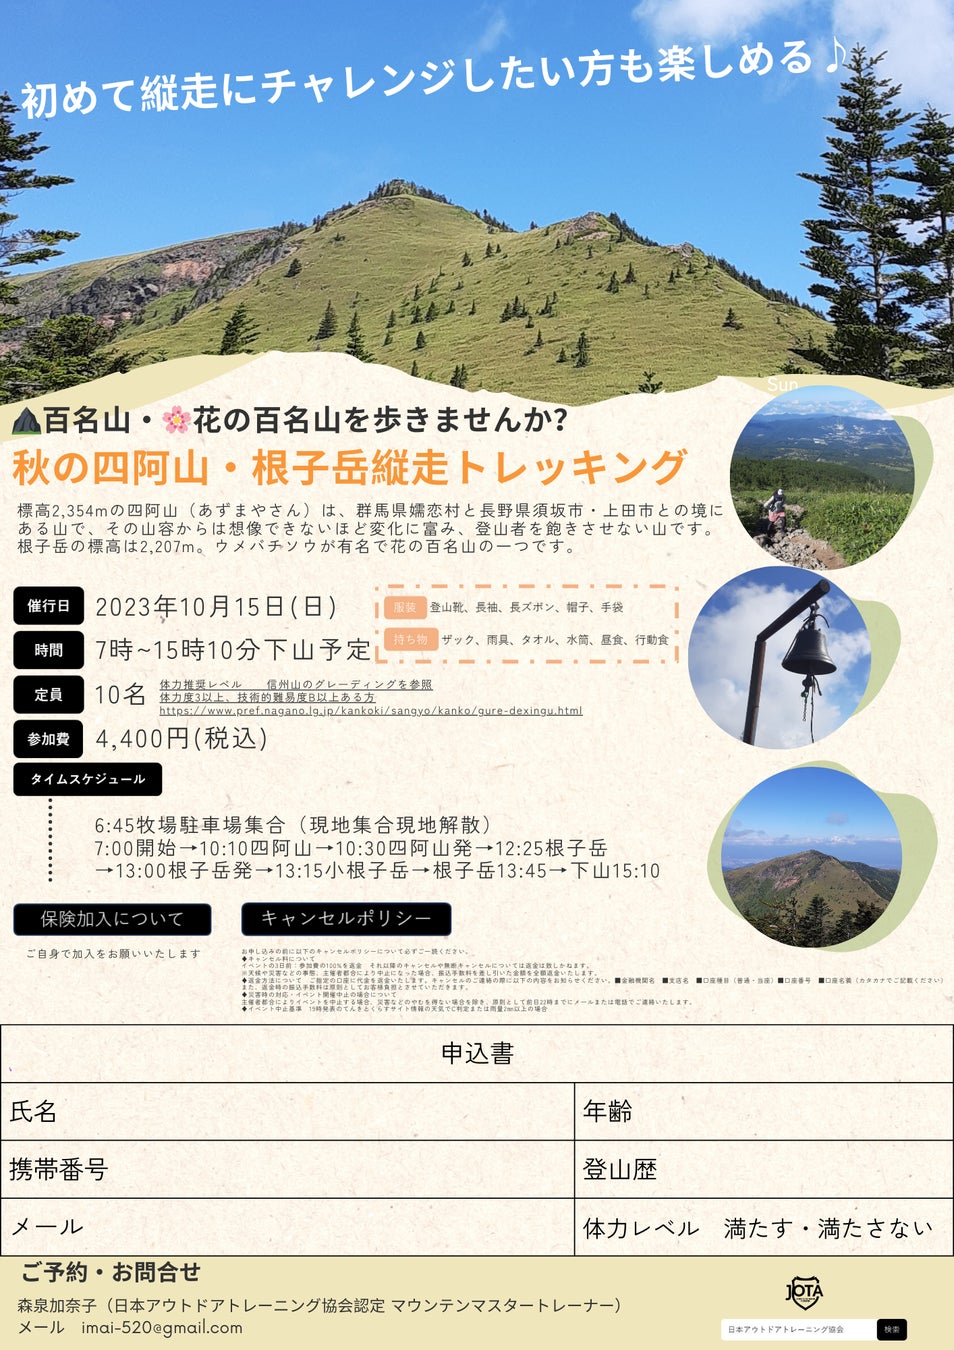 日本百名山の四阿山で登山トレーナーが日帰り縦走イベントを開催